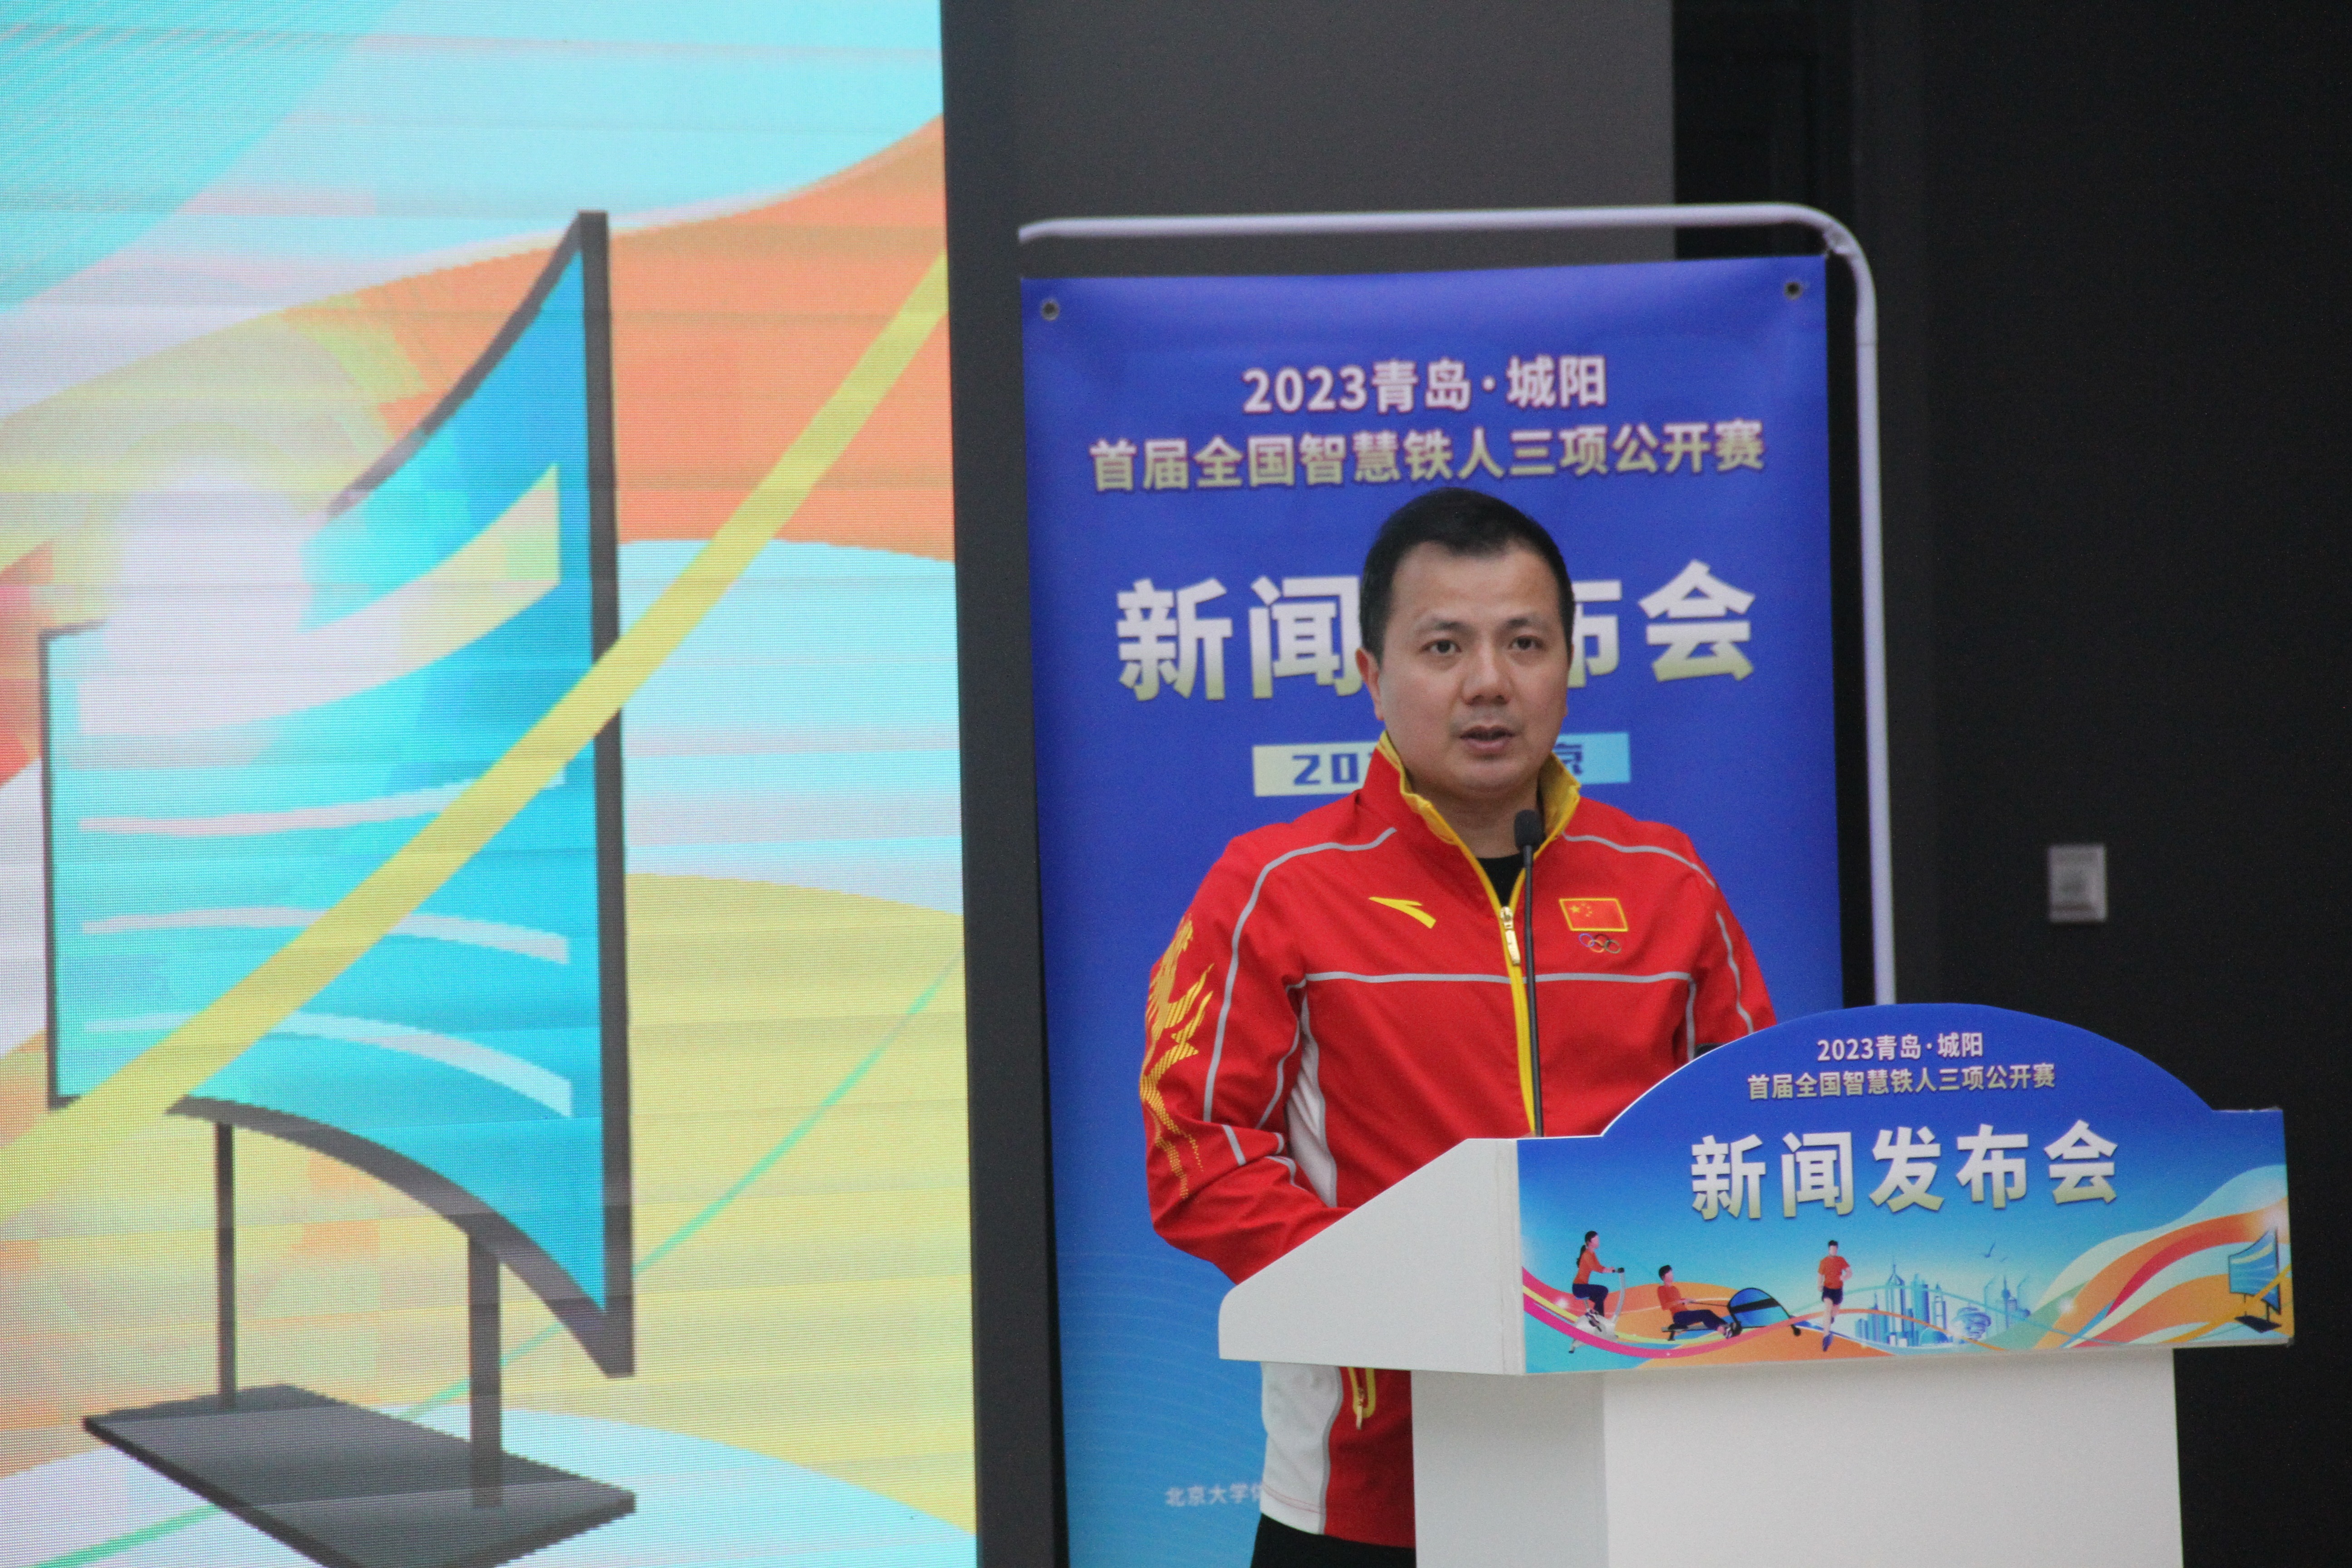 2008年北京奥运会男子举重62公斤级冠军张湘祥发表赛事倡议